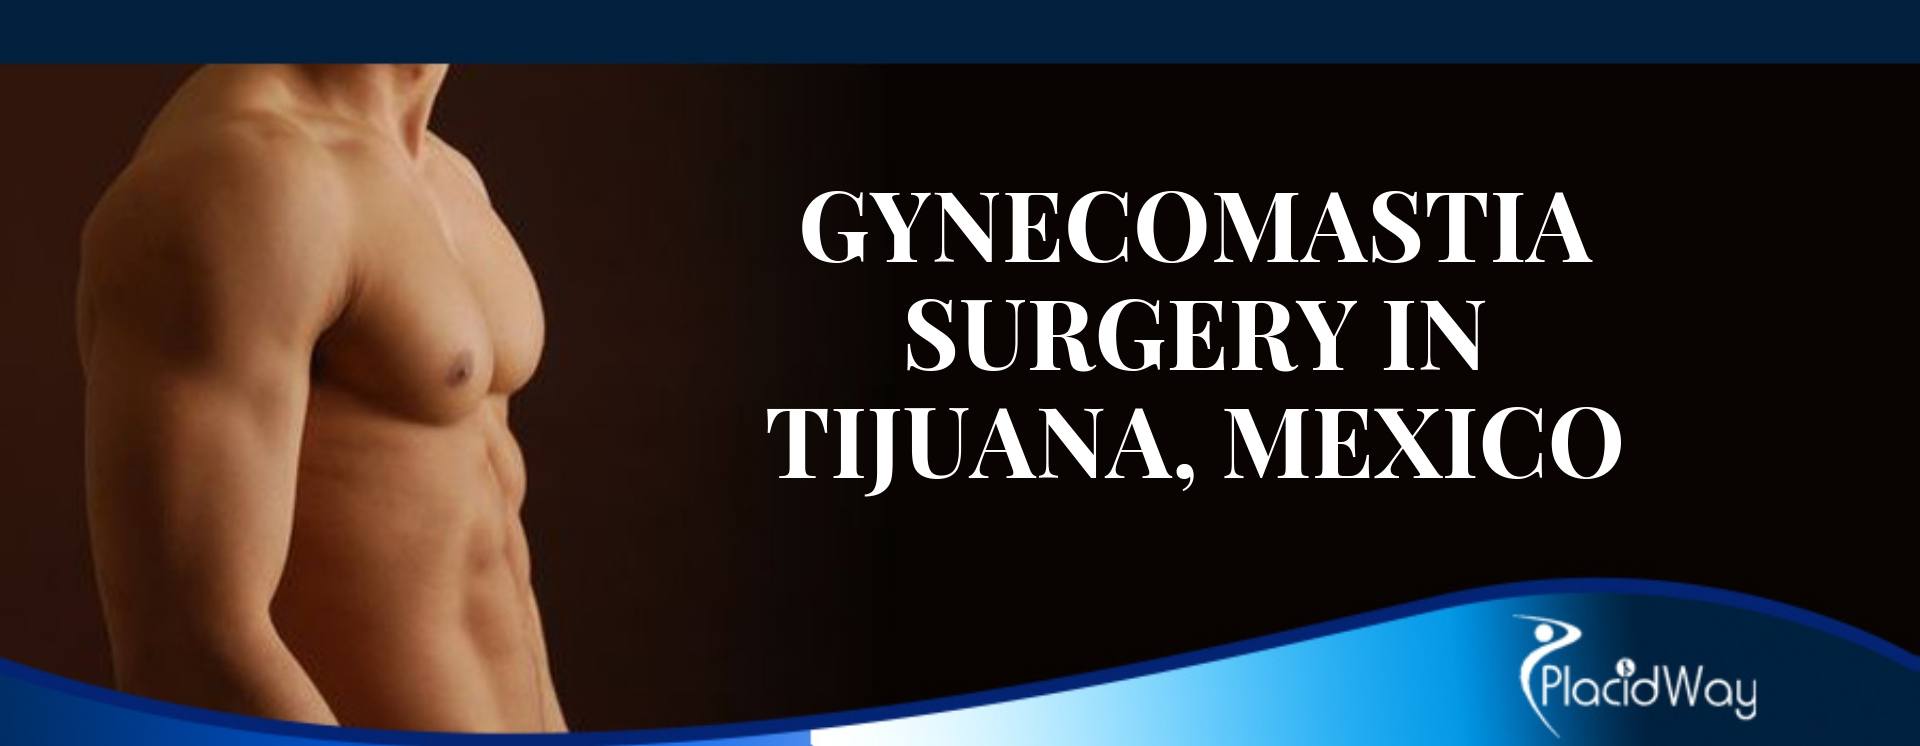 GynecomastIa Surgery in Tijuana, Mexico